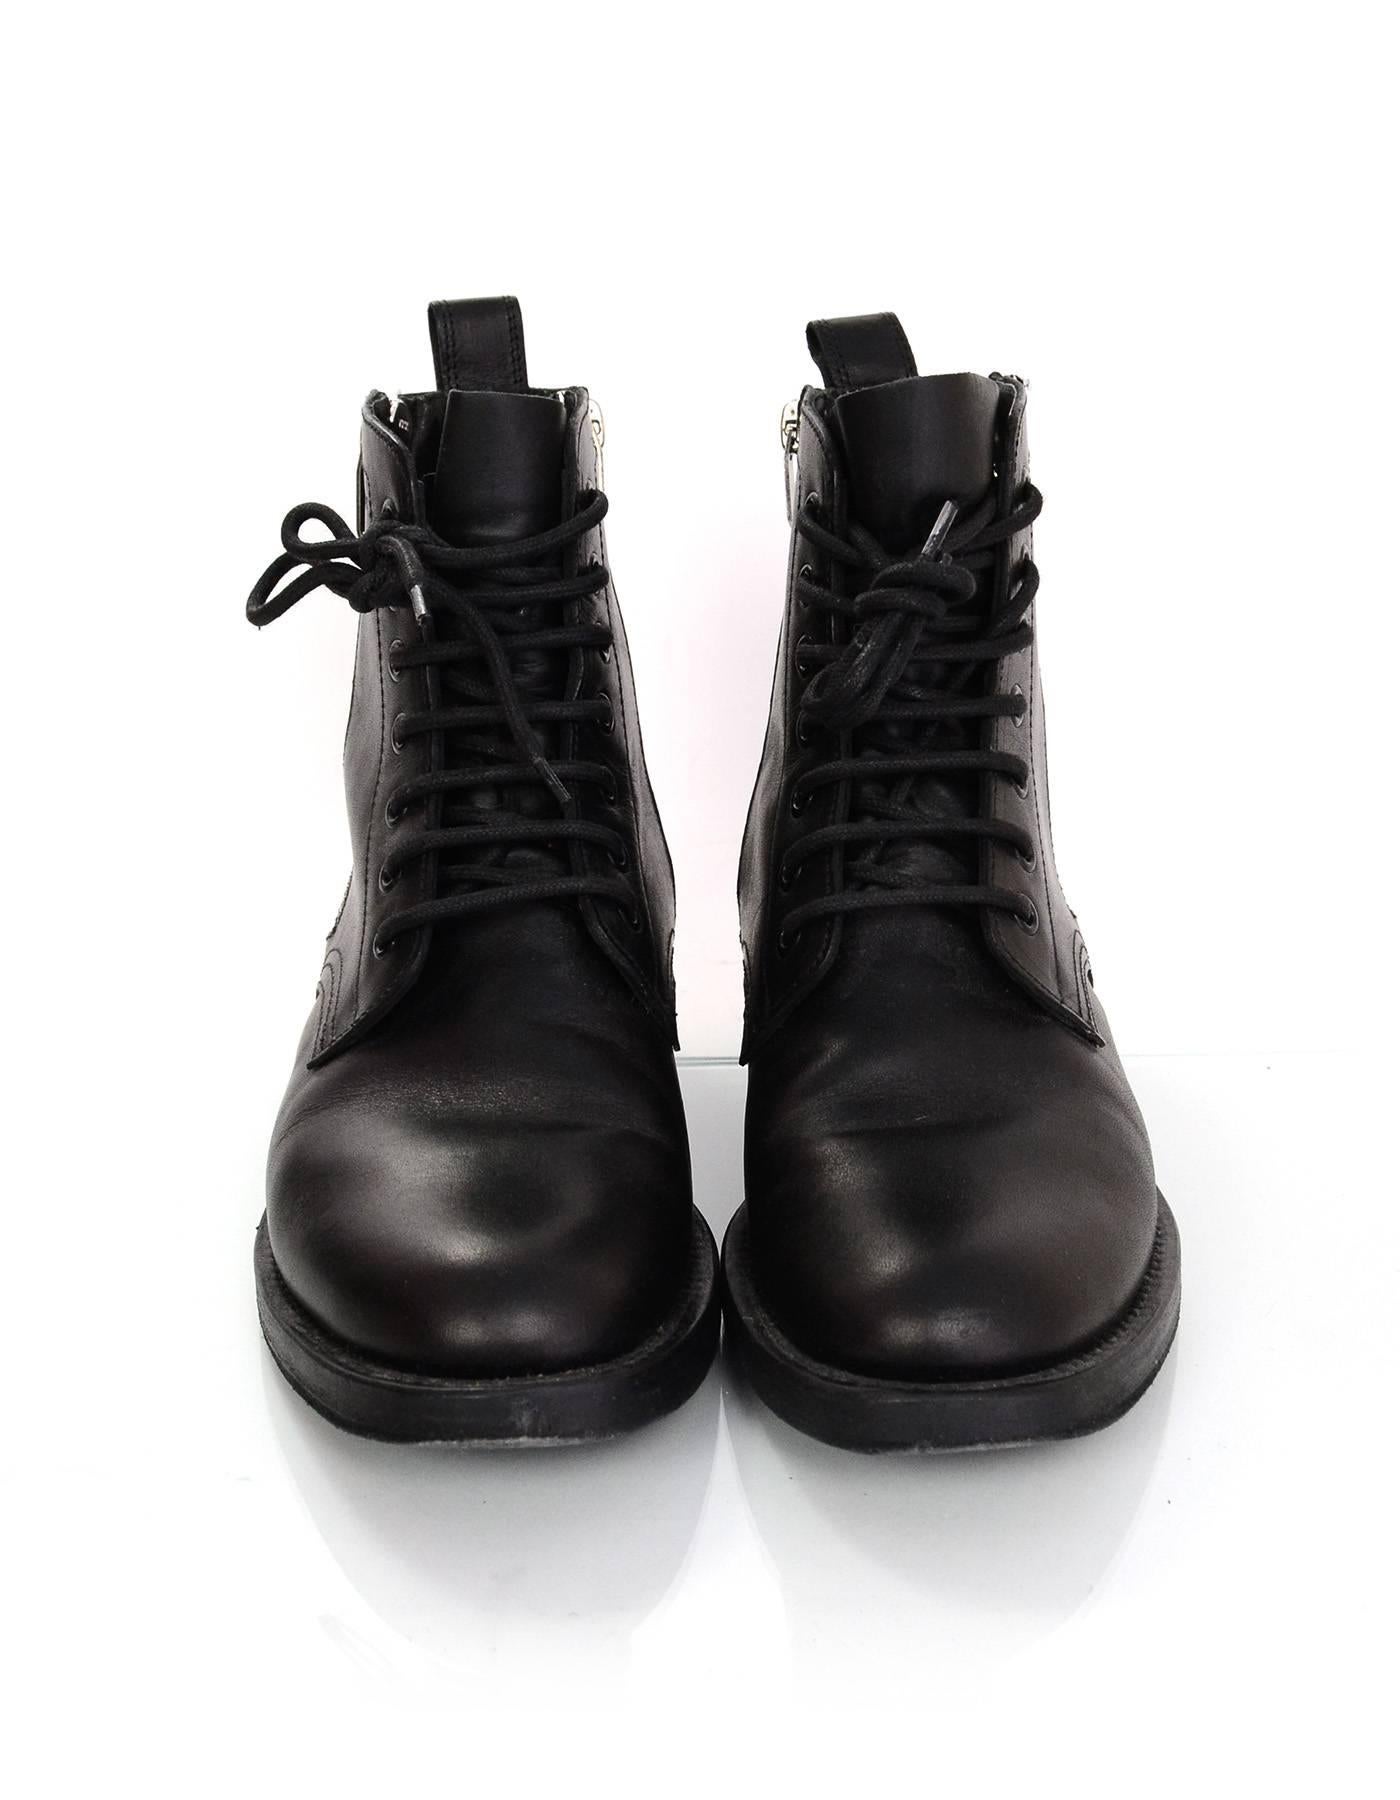 Women's Saint Laurent Black Leather Combat Ankle Boots Sz 38.5 rt. $1, 295